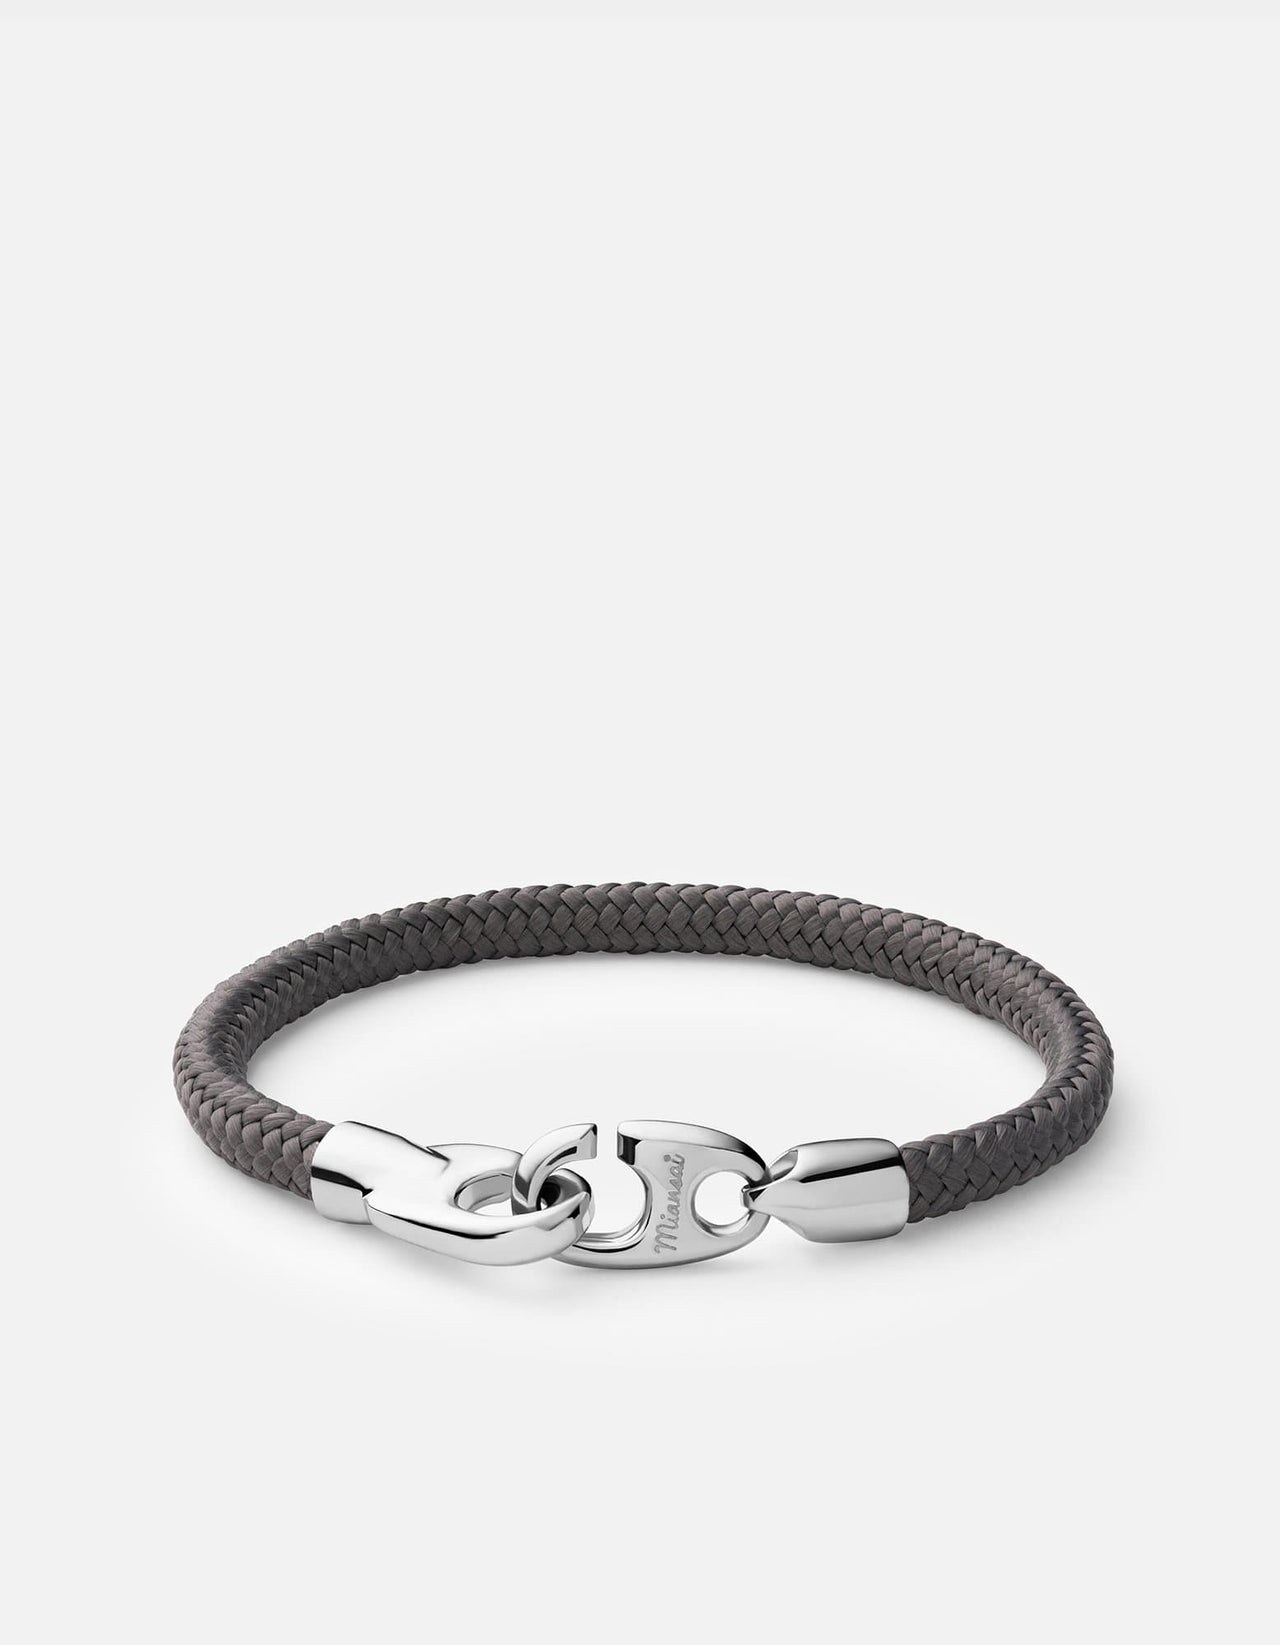 Single Brummel Rope Bracelet, Sterling Silver – Miansai